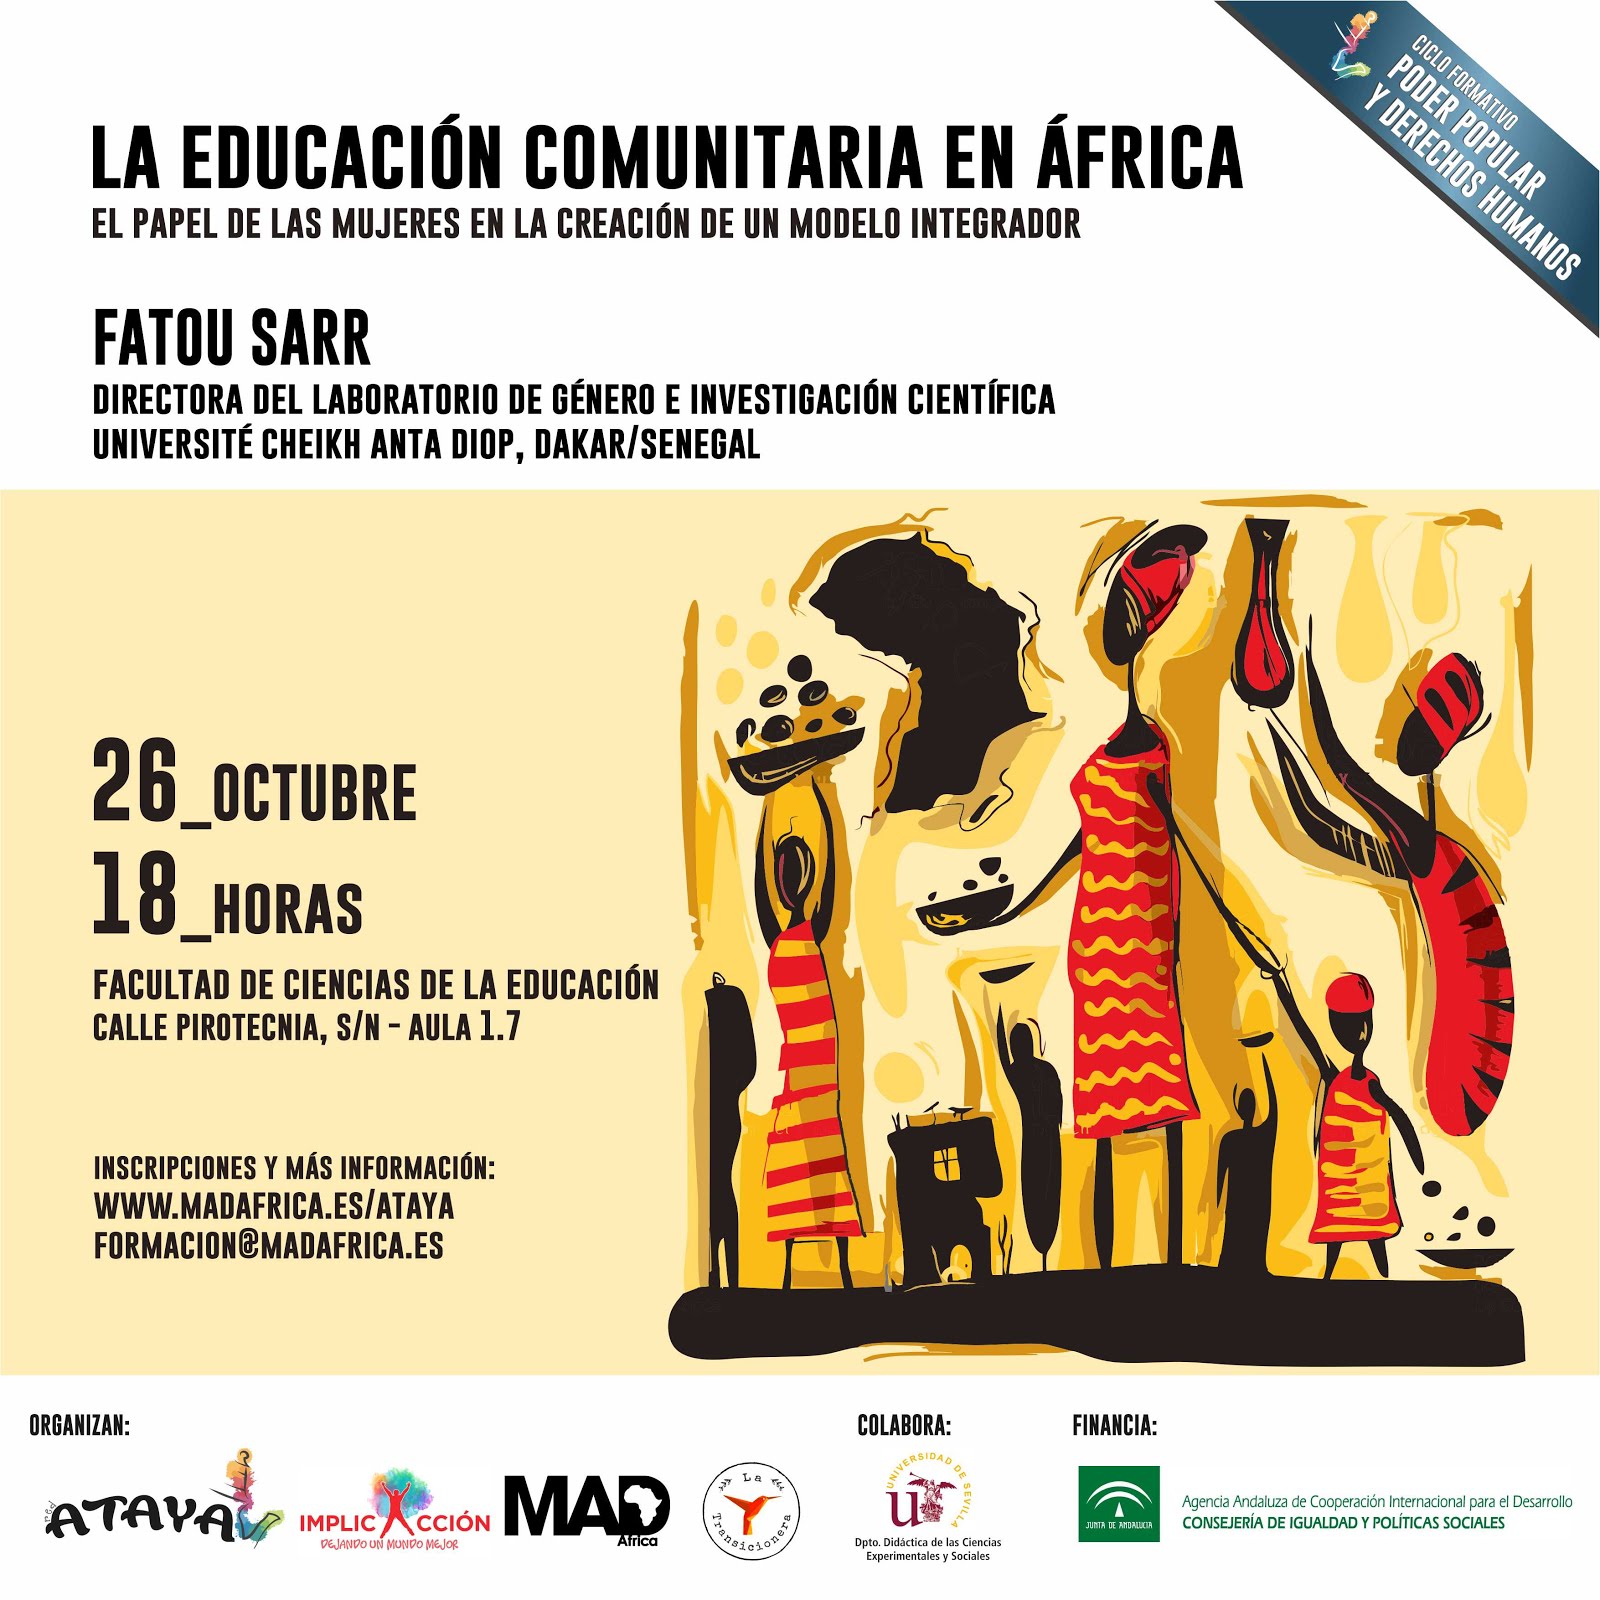 LA EDUCACIÓN COMUNITARIA EN ÁFRICA. El papel de las mujeres en la creación de un modelo integrador.